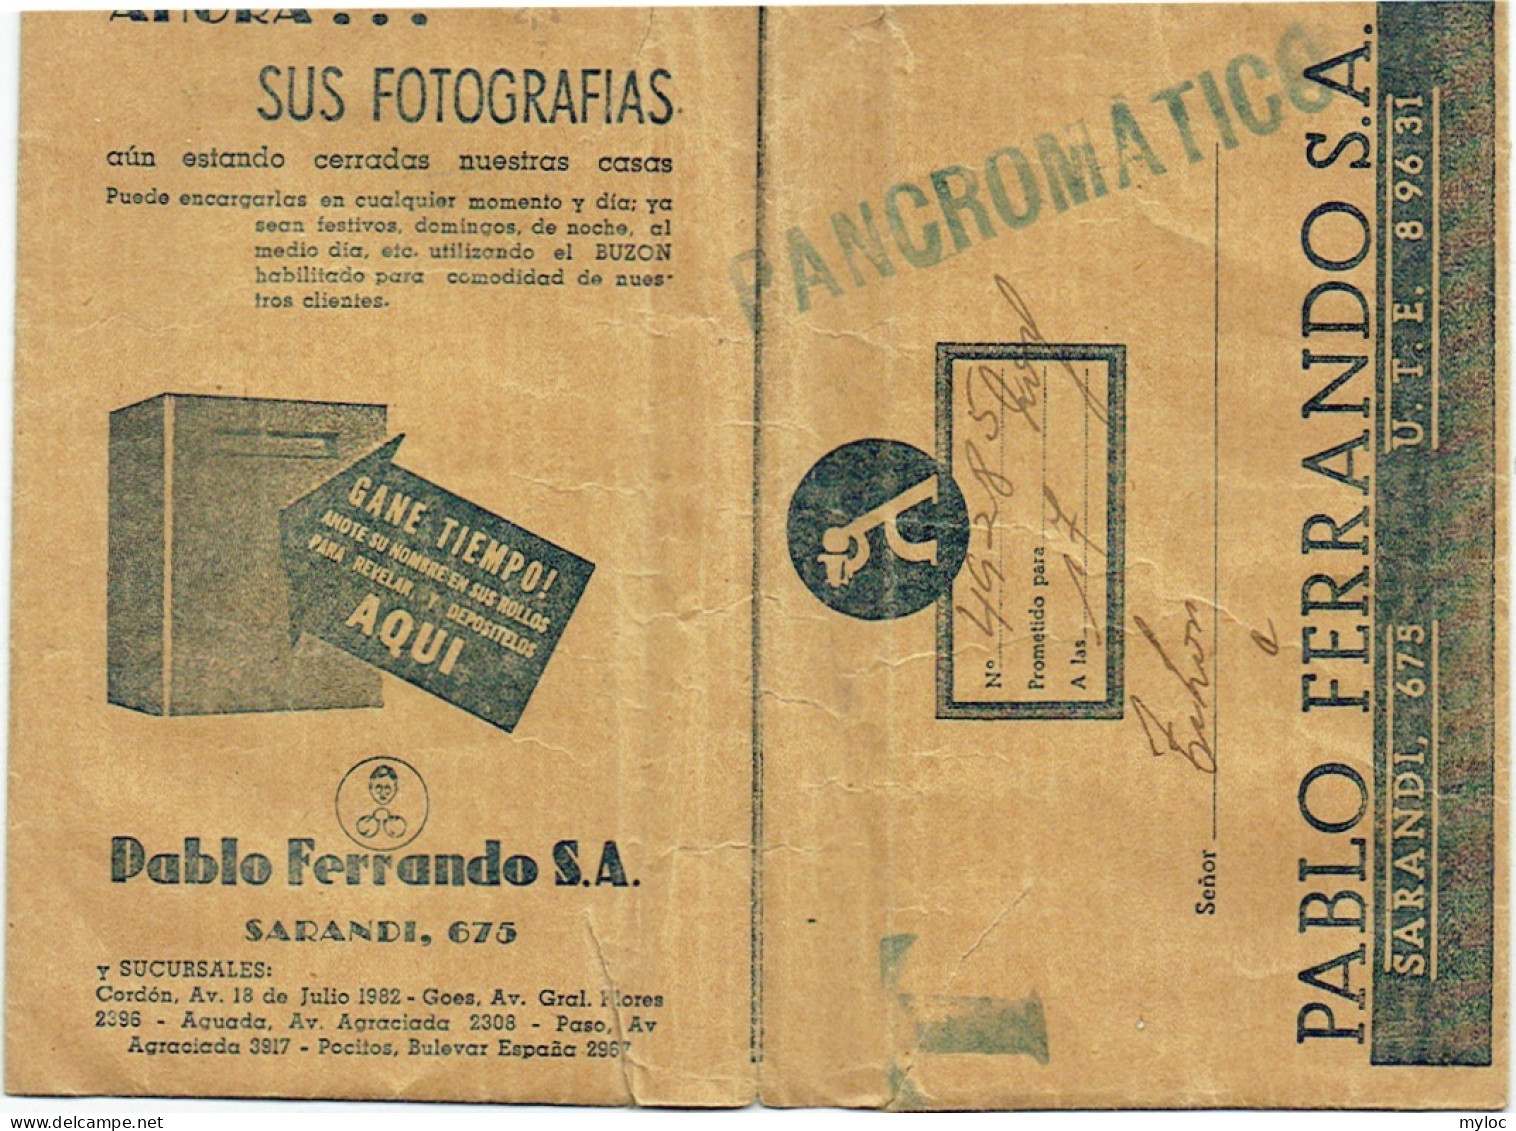 Foto/Photo. Pablo Ferrando, Sarandi, Uruguay. Ancienne Pochette Vide. - Material Y Accesorios